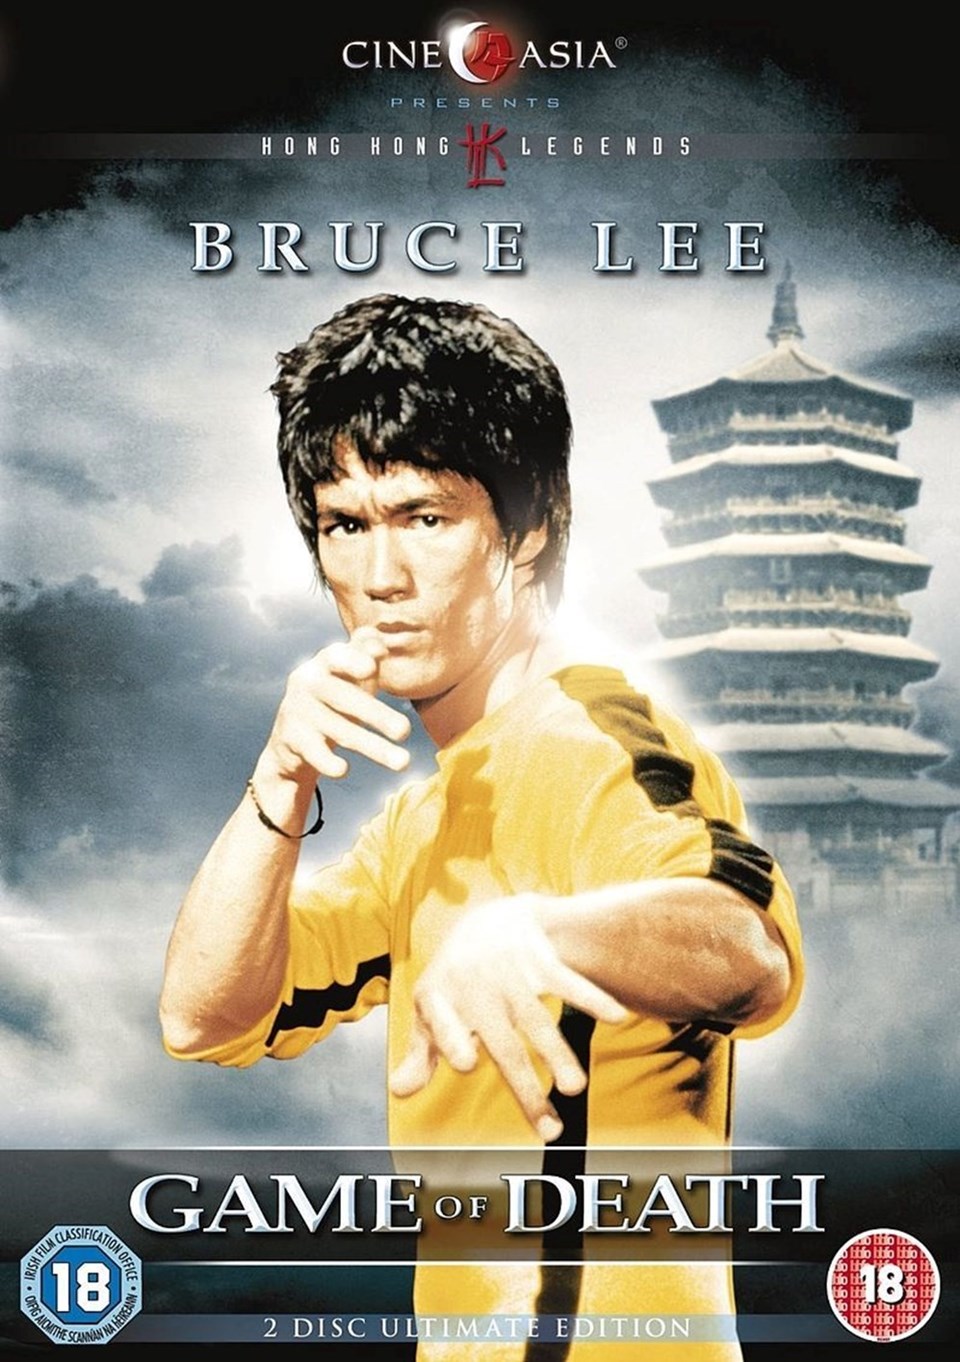 Bruce Lee'nin hayatı film oluyor - 1